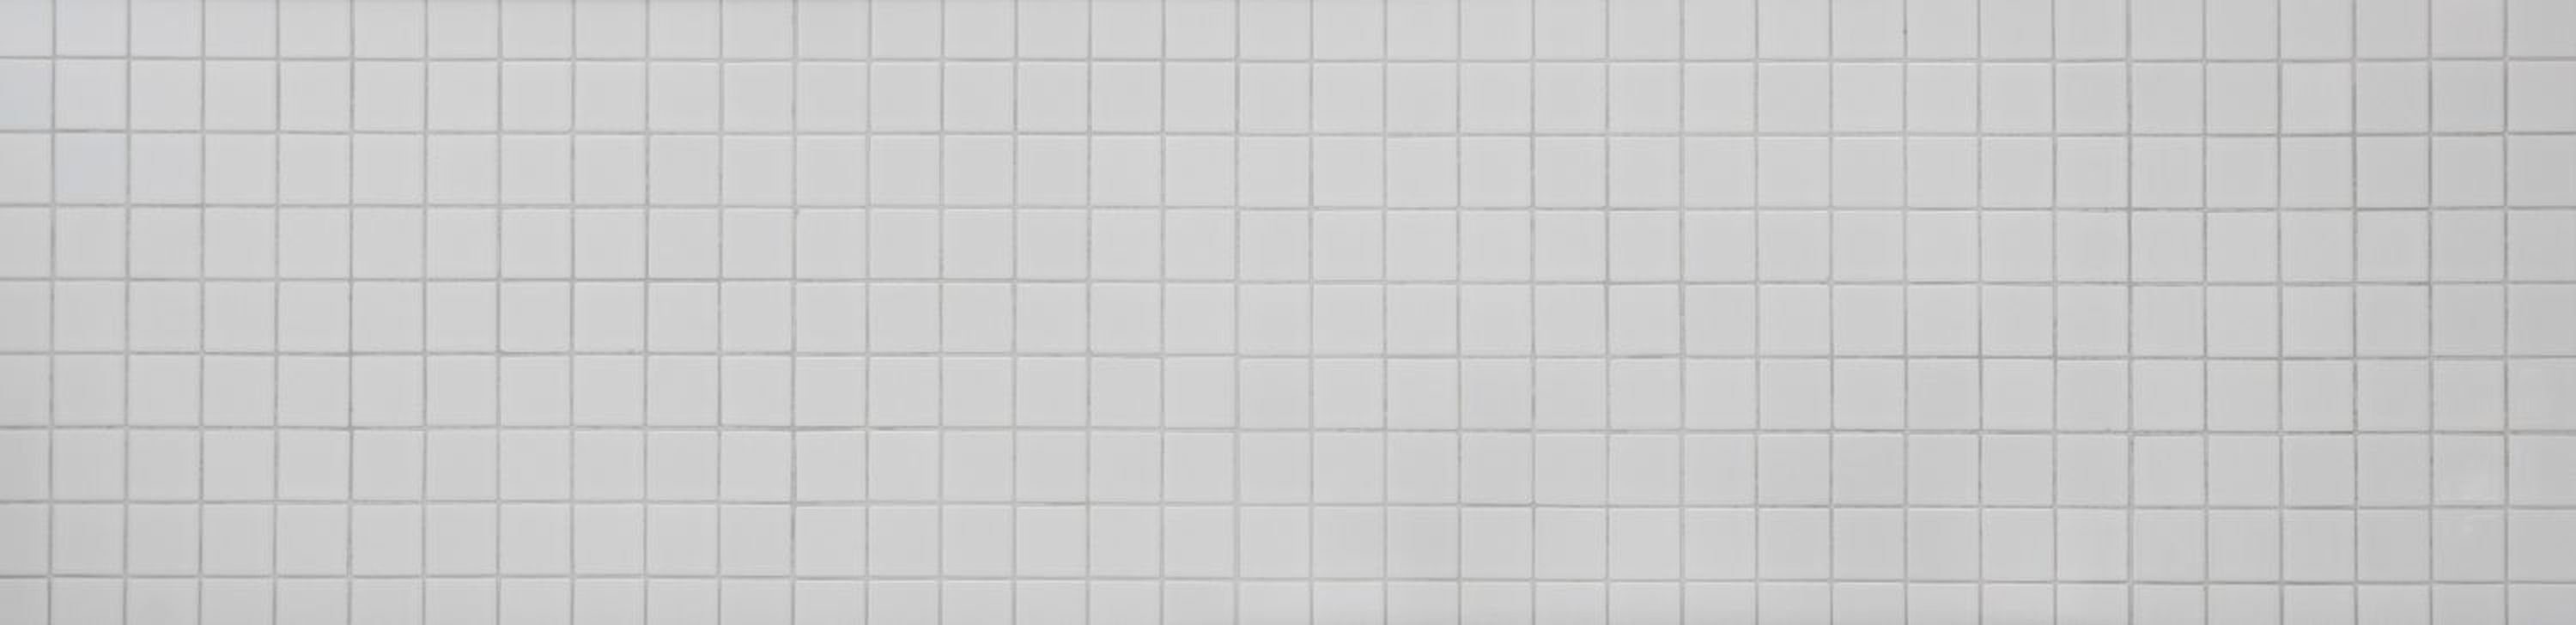 Mosani Mosaikfliesen Quadratisches weiß Matten Mosaikfliesen Keramikmosaik / 10 glänzend